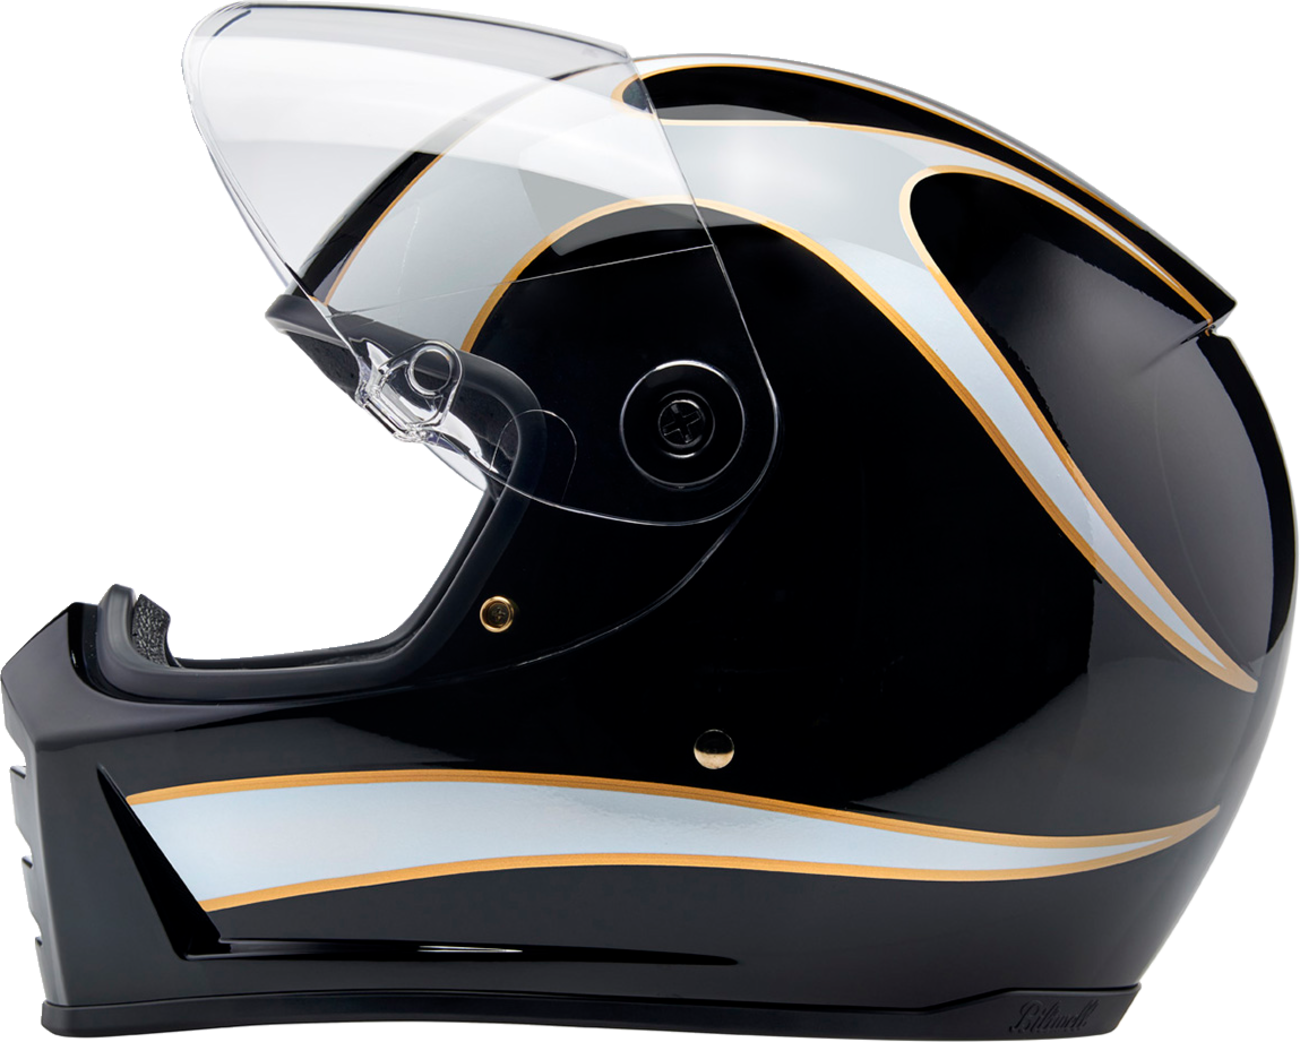 BILTWELL Lane Splitter Helmet - Gloss Black/White Flames - Large 1004-570-504